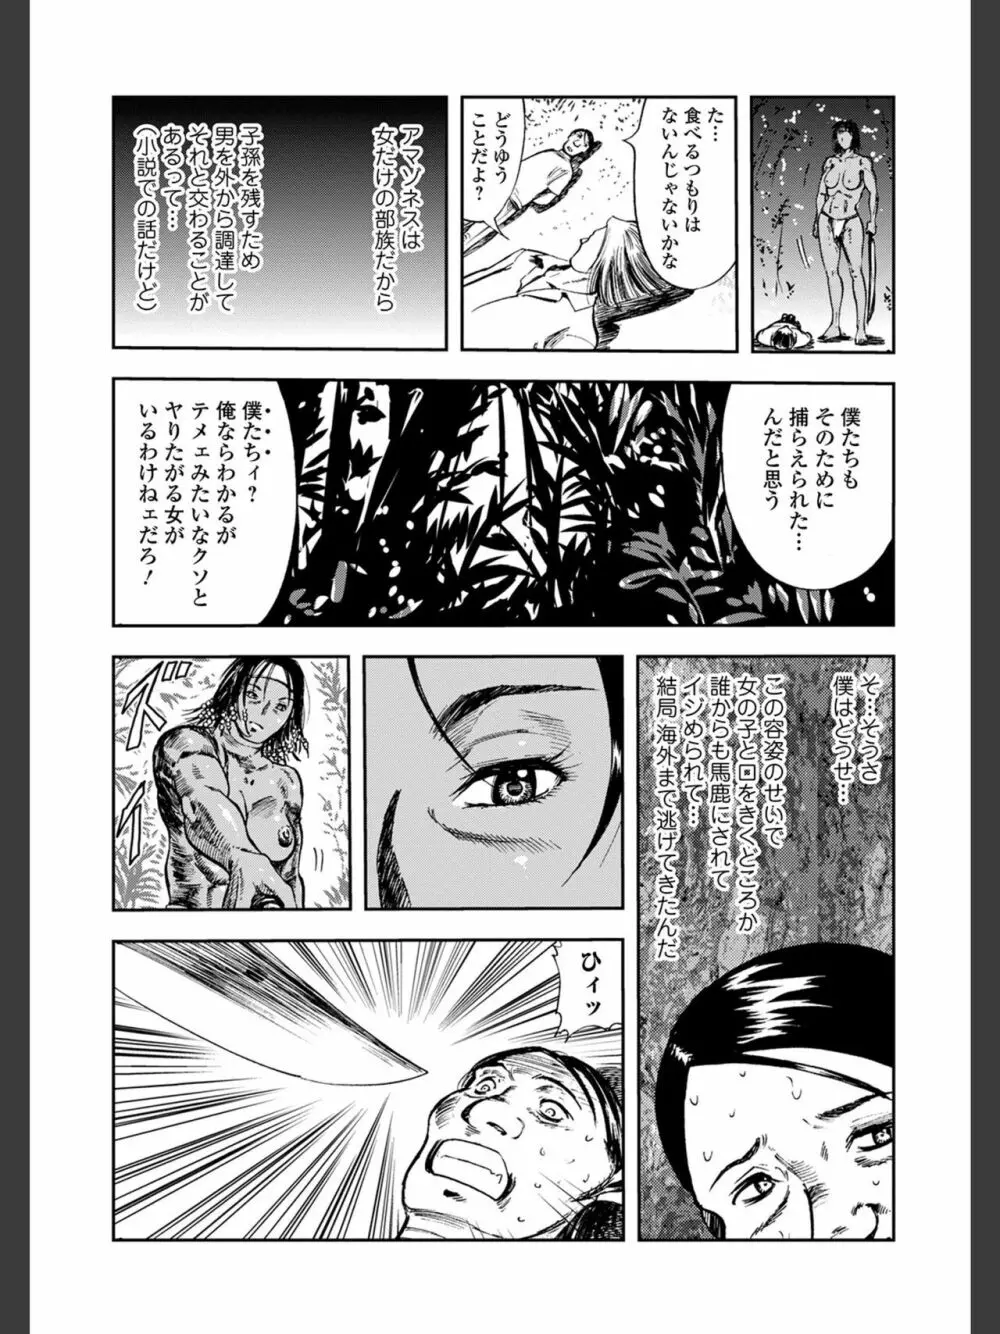 [山田タヒチ]人妻通販 -売られた女- 【FANZA特別版】 182ページ